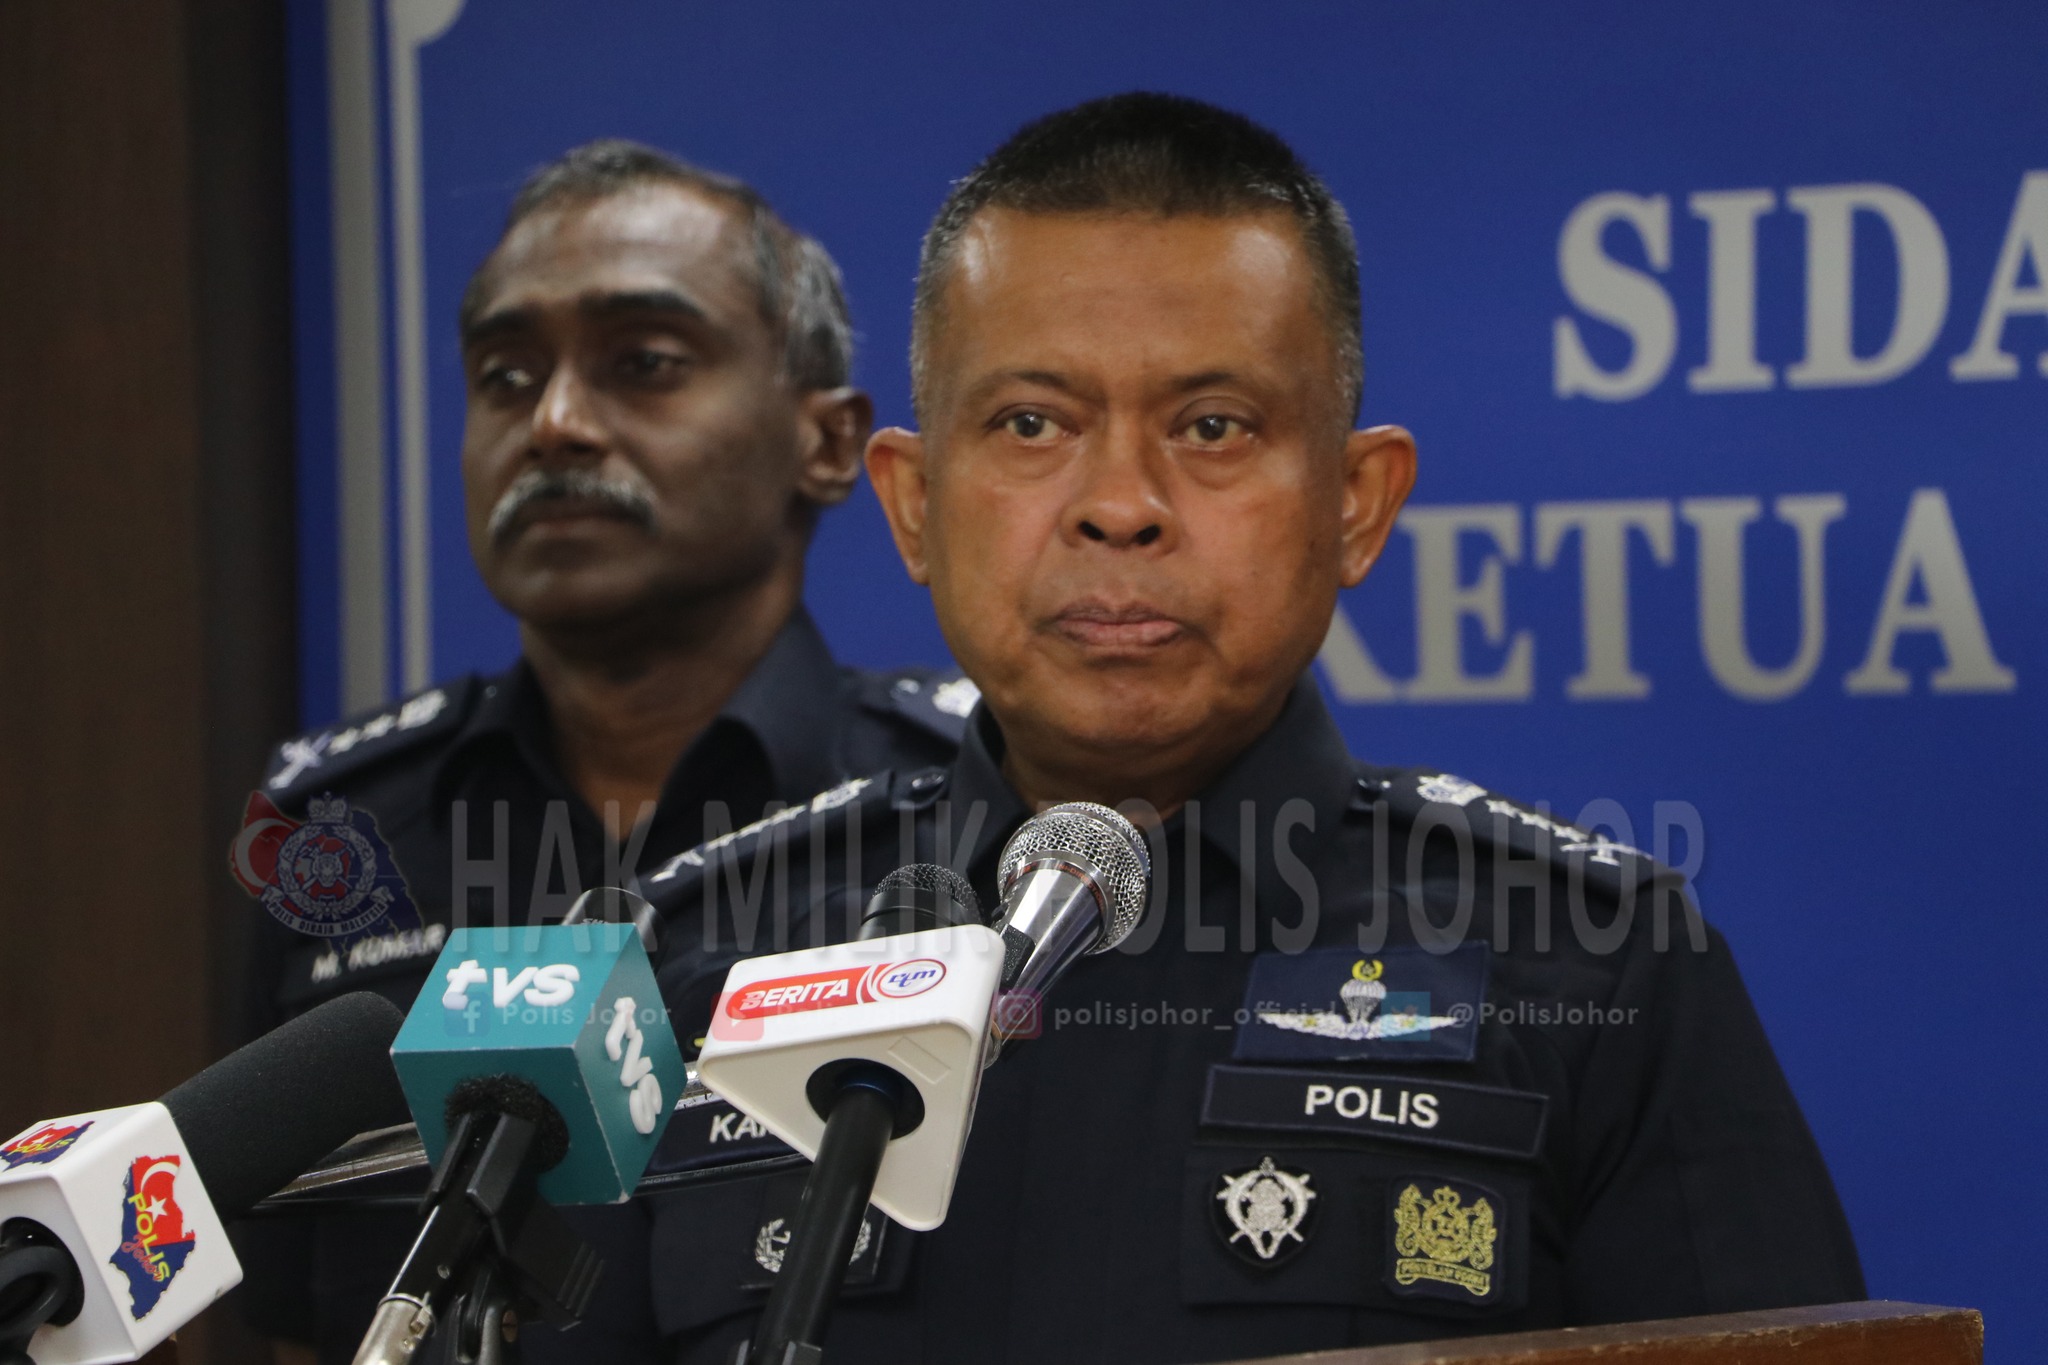 Polis sahkan siasatan kenyataan Abdul Hadi  berhubung kuasa Lembaga Pengampunan